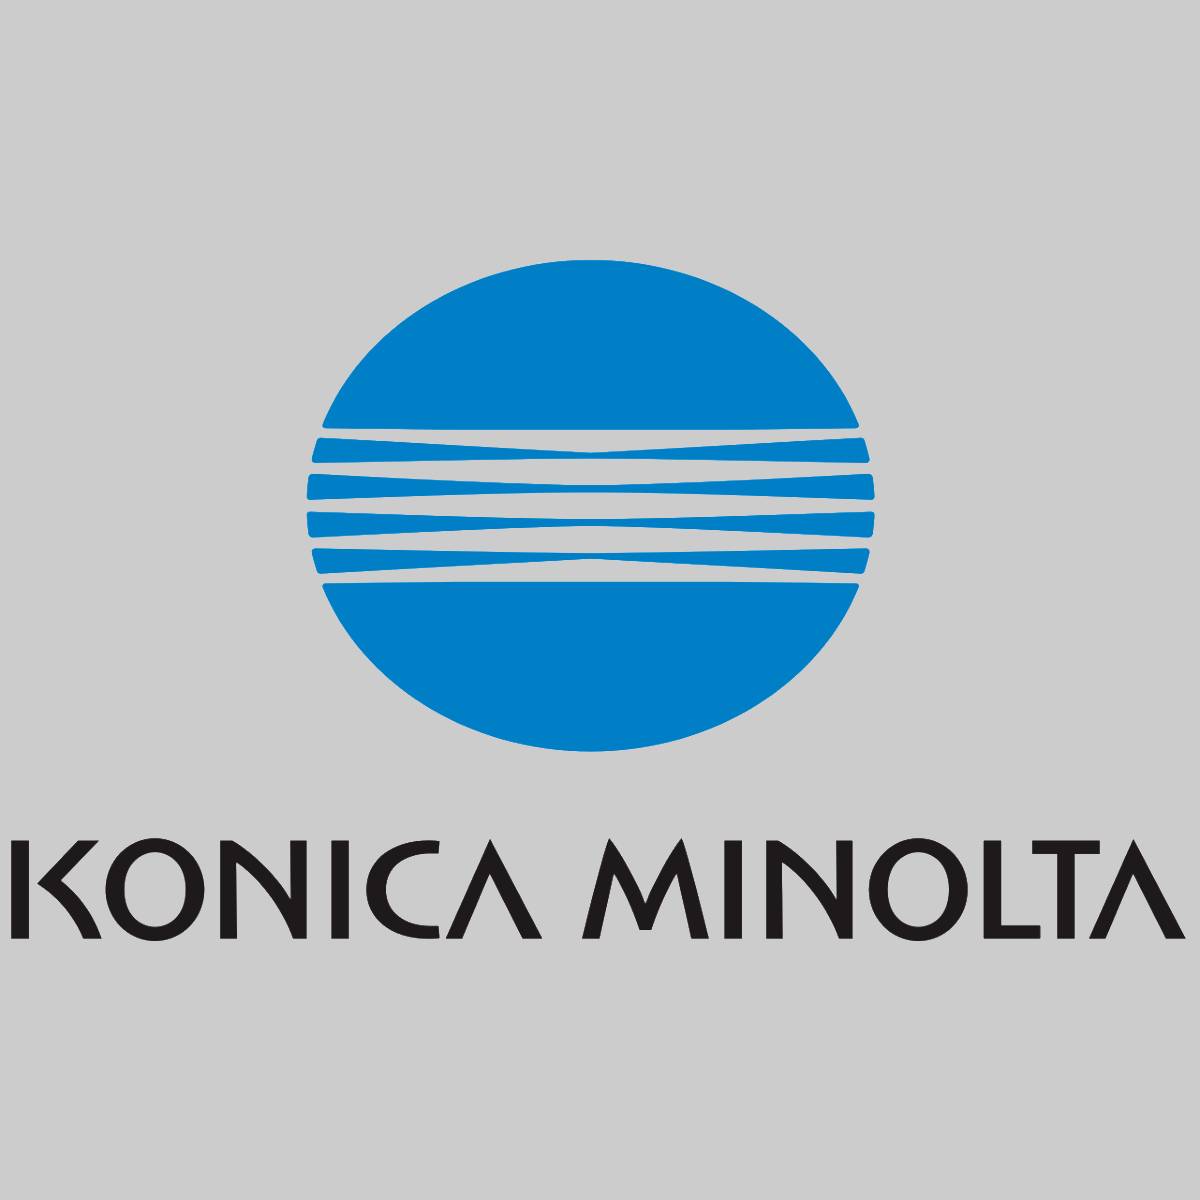 Toner d'origine Konica Minolta TN515 A9E8050 noir pour Bizhub 458 558 nouveau OVP ^